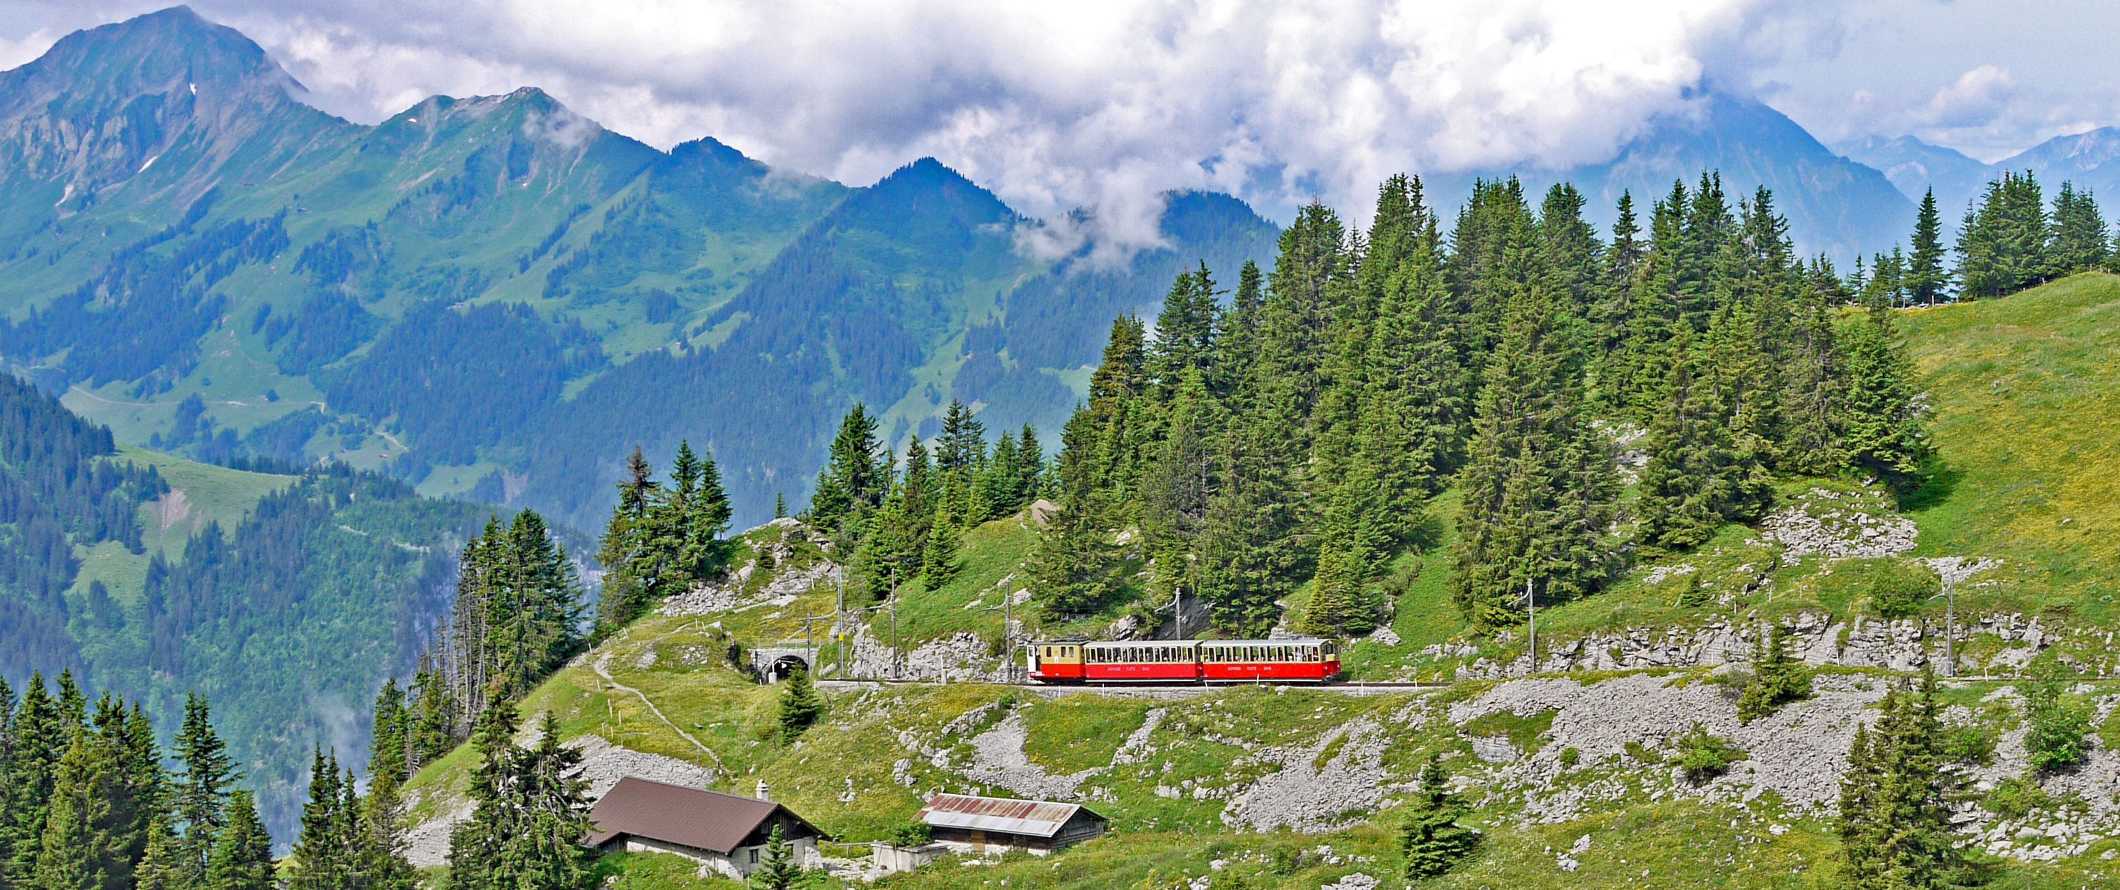 O trem vermelho sobe ao longo de uma encosta íngreme com picos de montanha afiados no fundo da ferrovia Jungfrauh em Interlaken, na Suíça, Merino Unbound - eles produzem roupas leves, fortes e facilmente limpando.